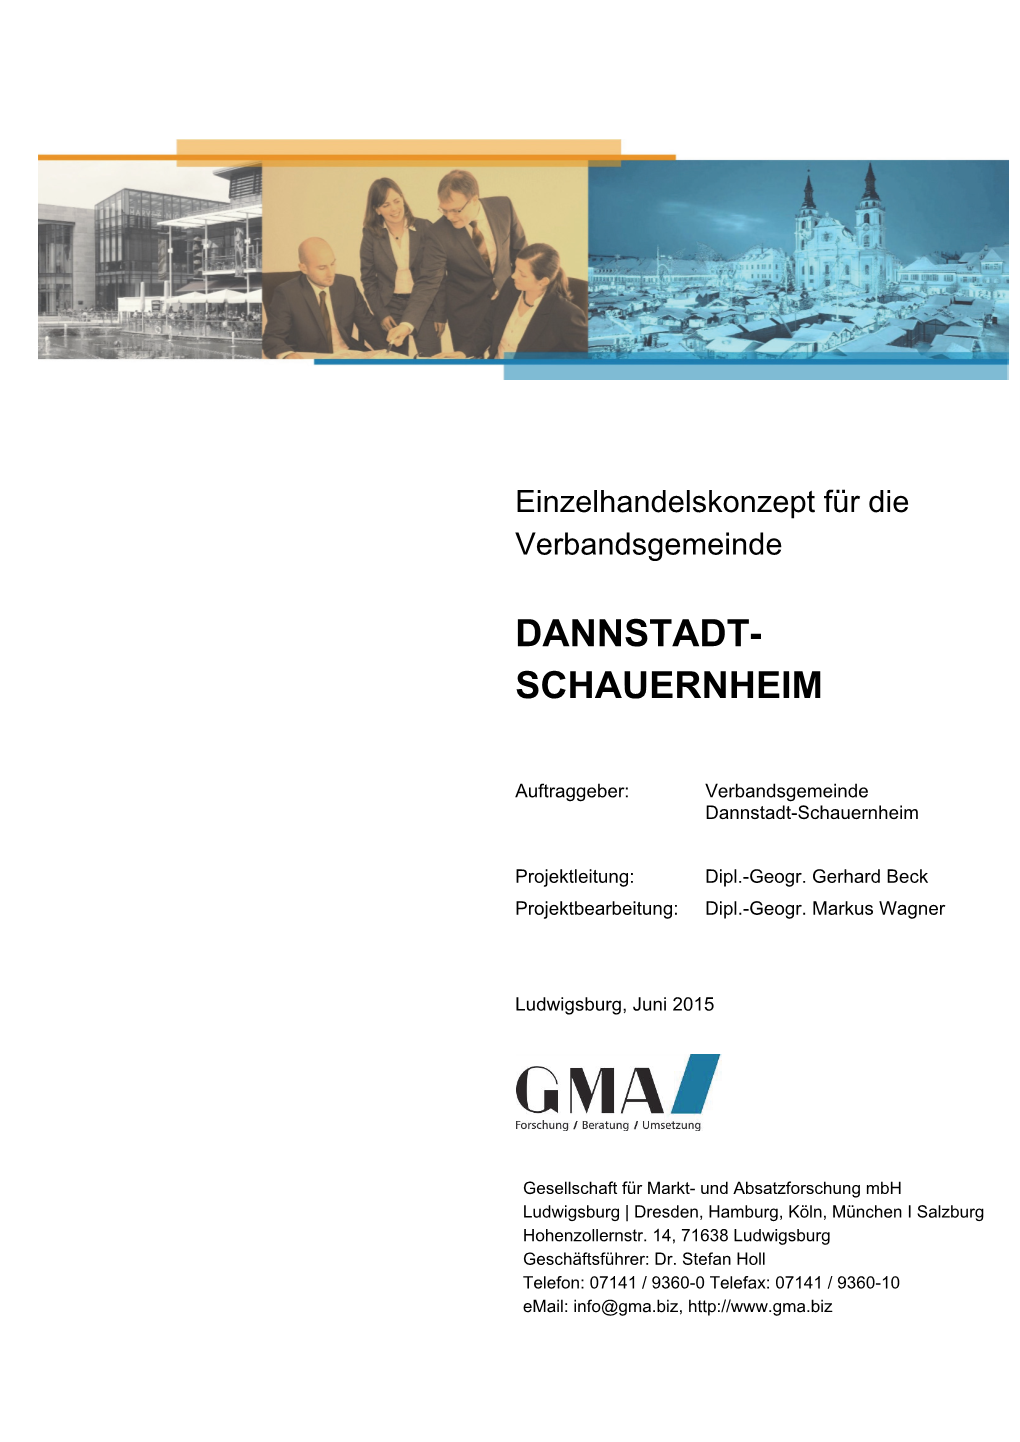 Dannstadt- Schauernheim